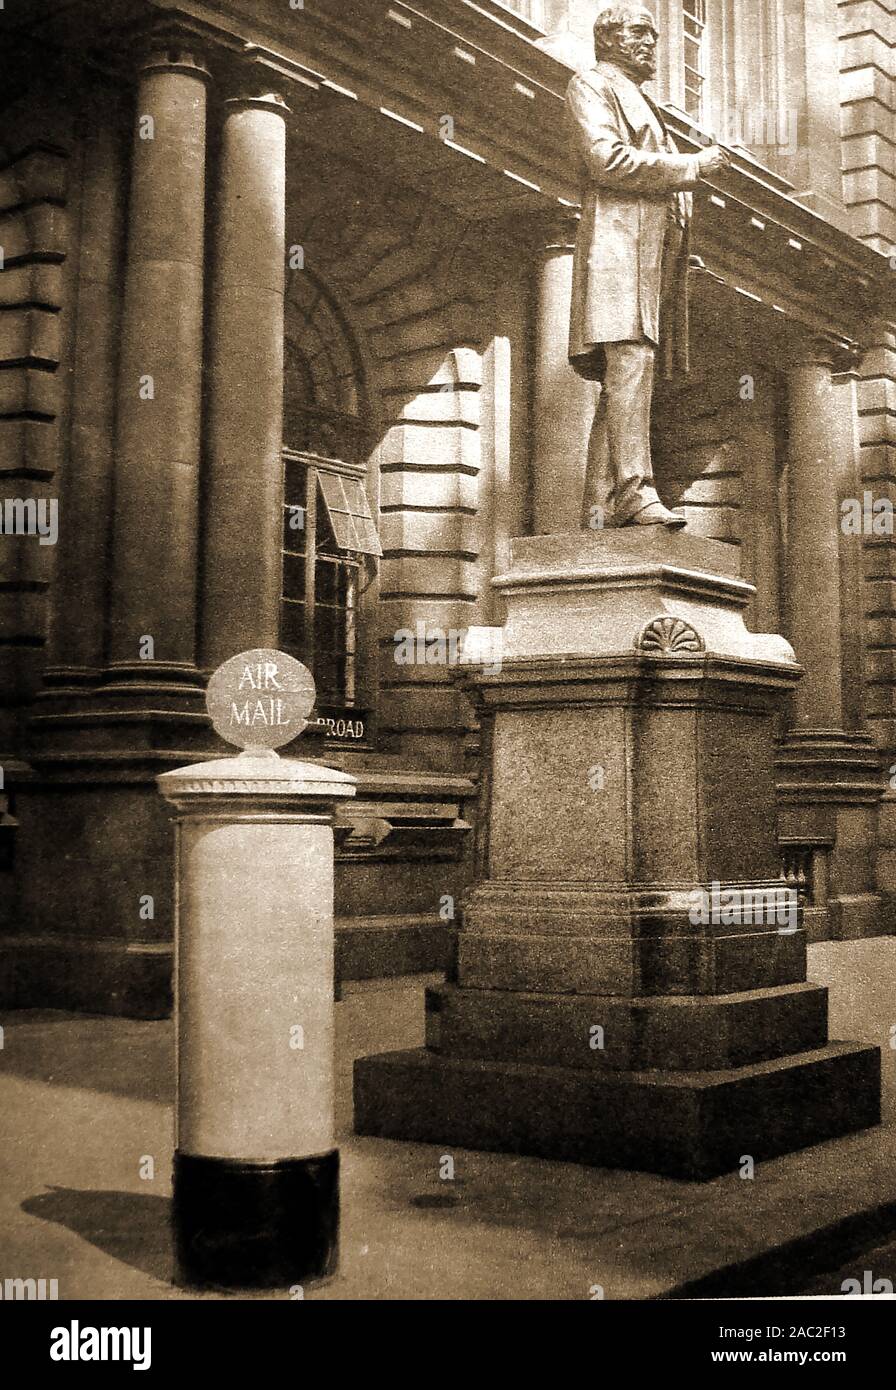 Ein 1934 historischen Foto, die Statue von Rowland Hill (1795-1879) außerhalb der GPO (General Post Office) London, UK mit einem blauen engagierten Brief Briefkasten neben Stockfoto